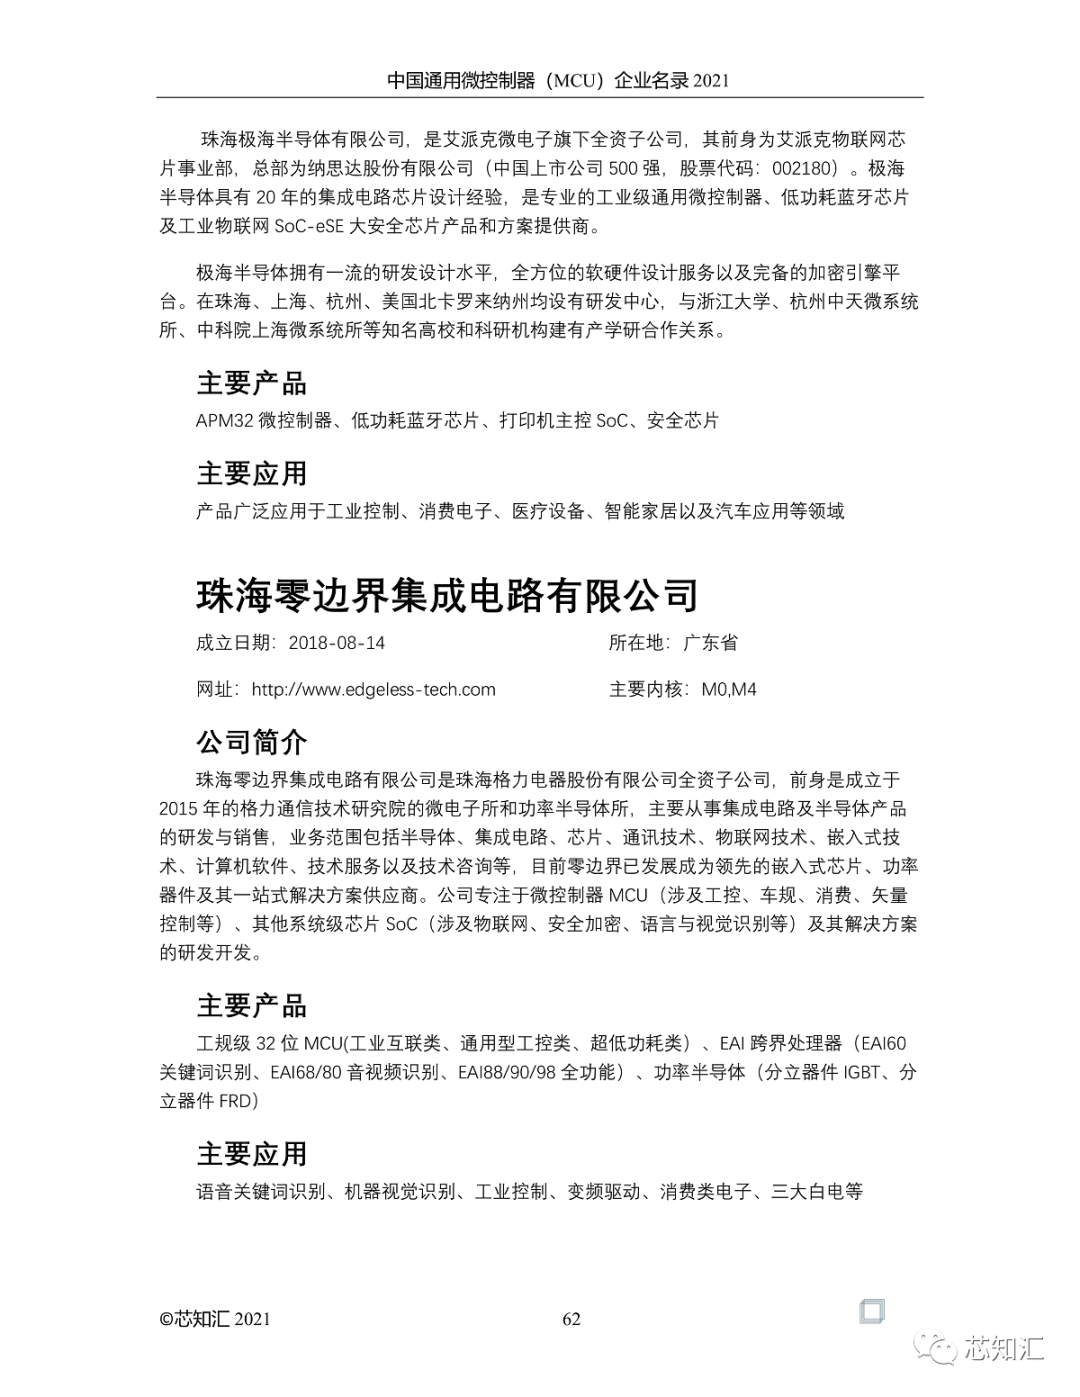 中国通用微控制器(MCU)企业名录-2021  第62张